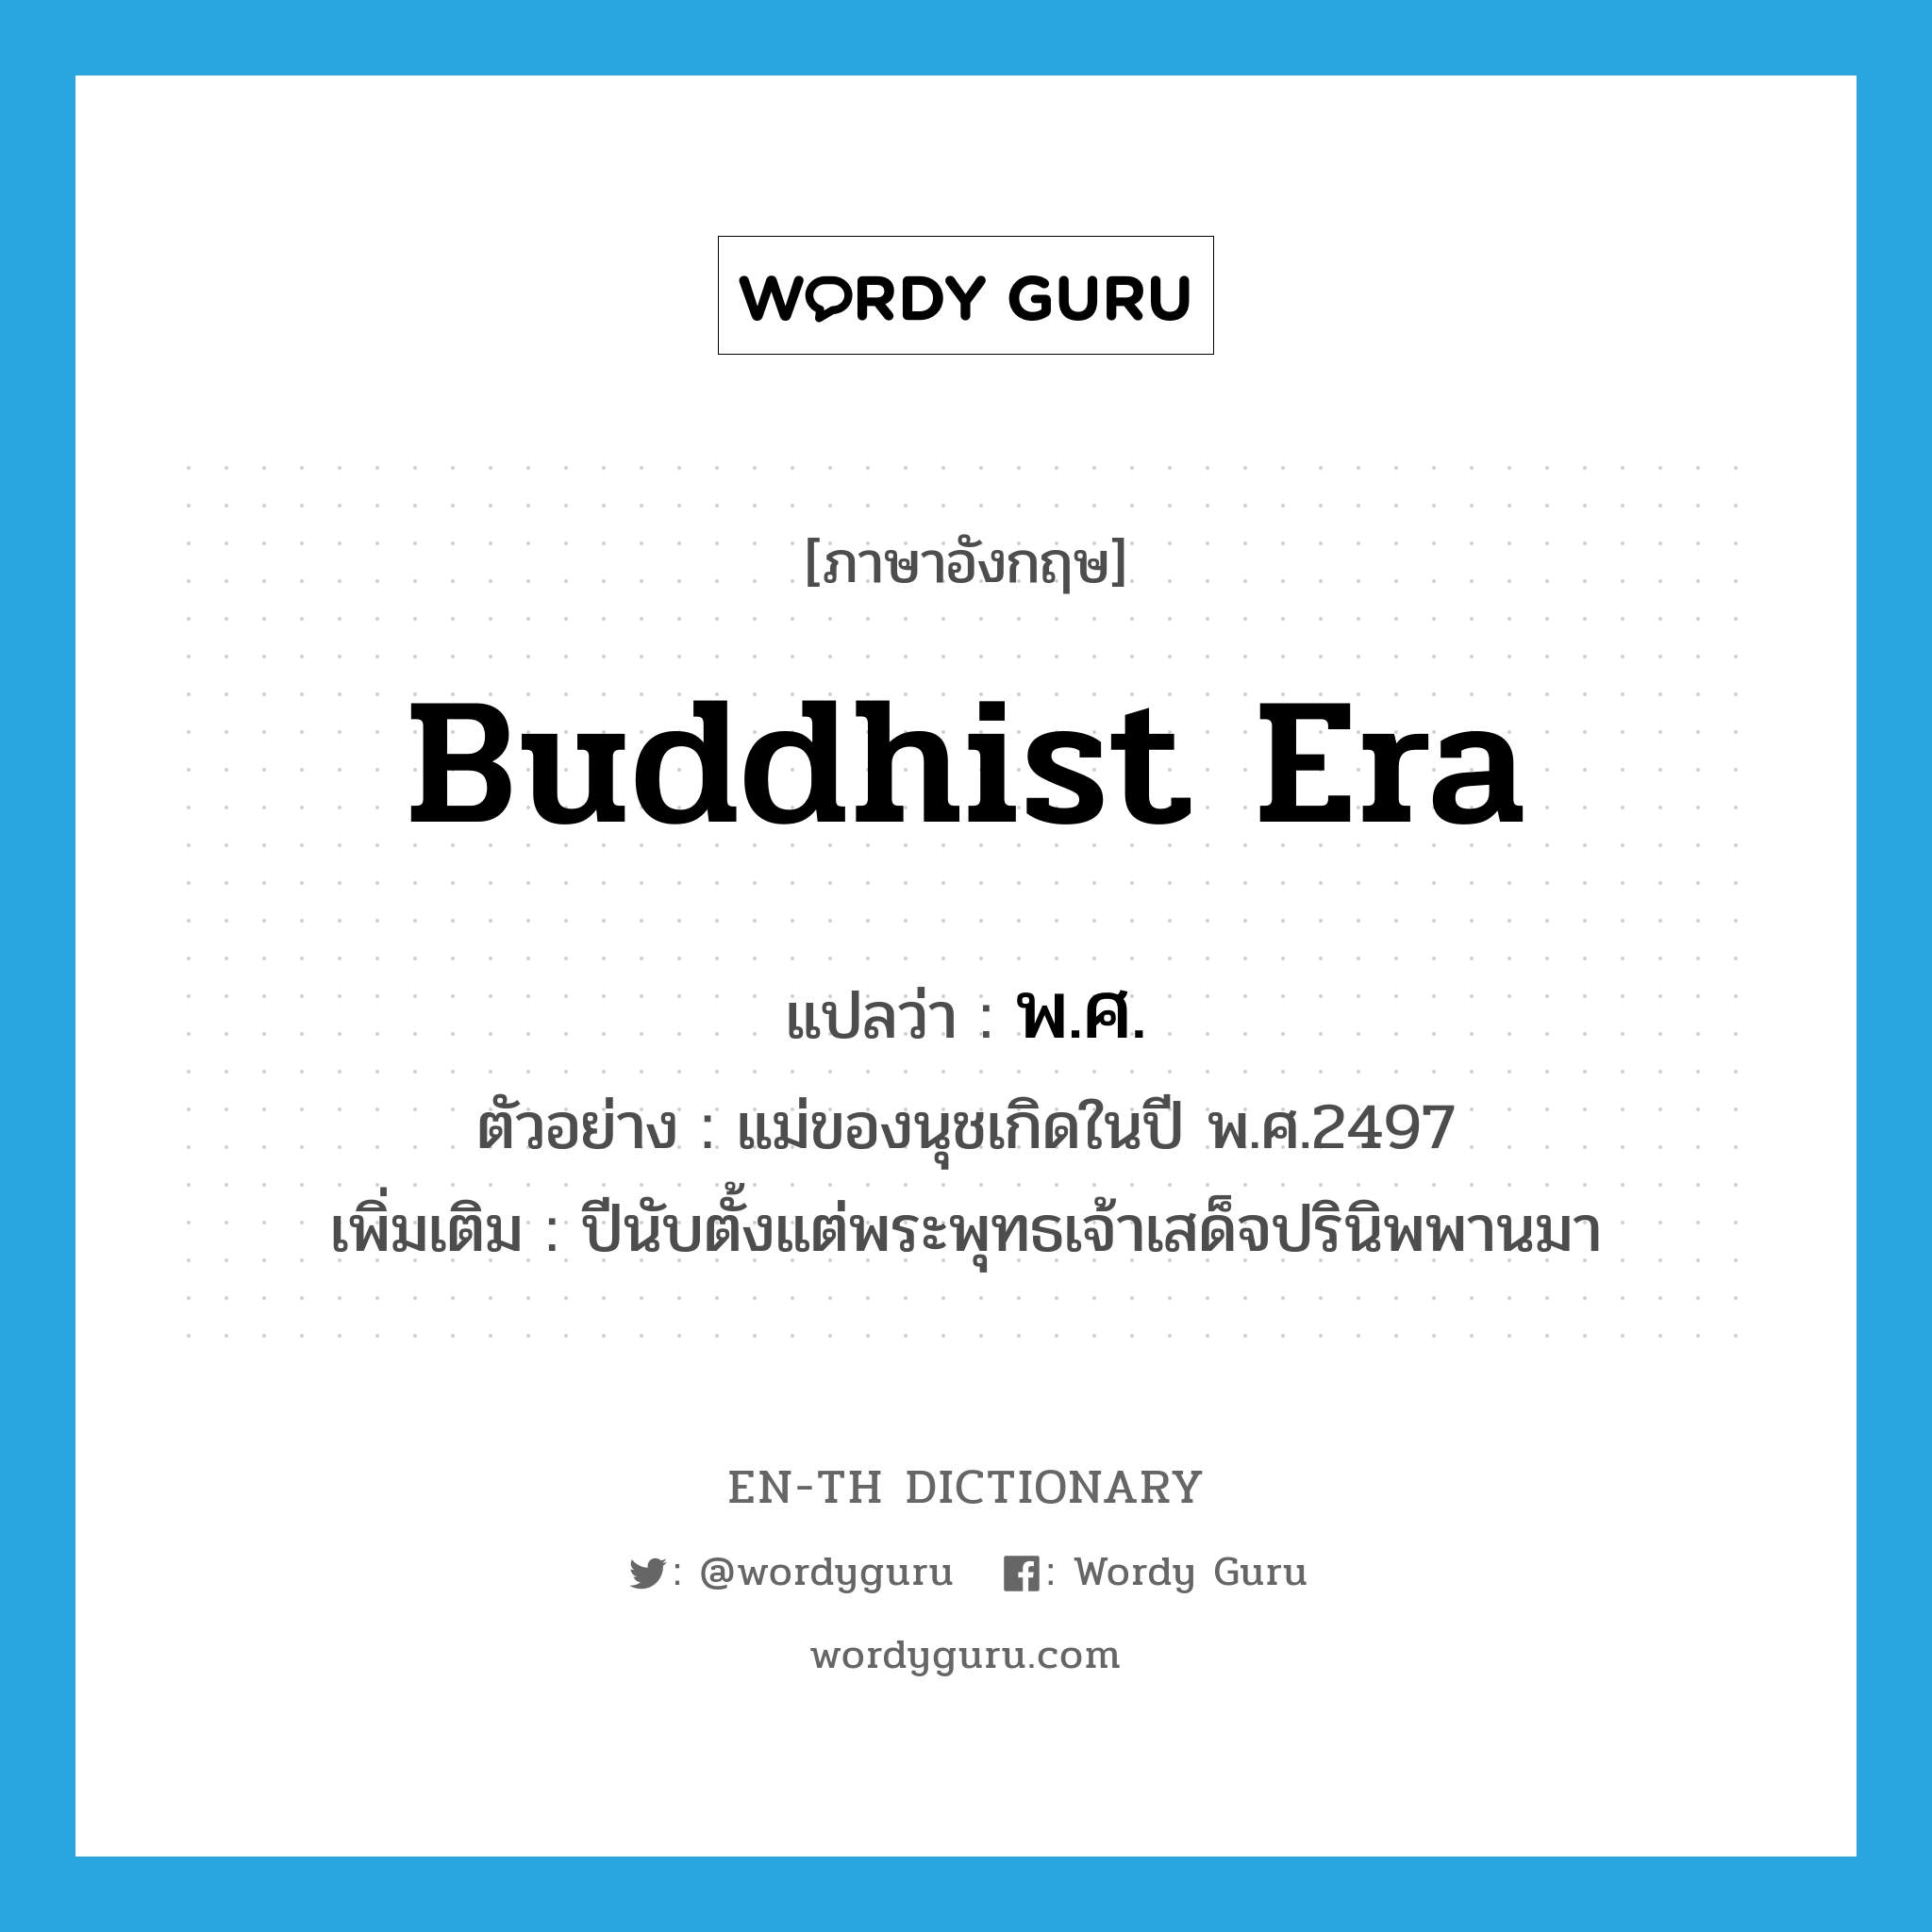 Buddhist era แปลว่า?, คำศัพท์ภาษาอังกฤษ Buddhist Era แปลว่า พ.ศ. ประเภท N ตัวอย่าง แม่ของนุชเกิดในปี พ.ศ.2497 เพิ่มเติม ปีนับตั้งแต่พระพุทธเจ้าเสด็จปรินิพพานมา หมวด N